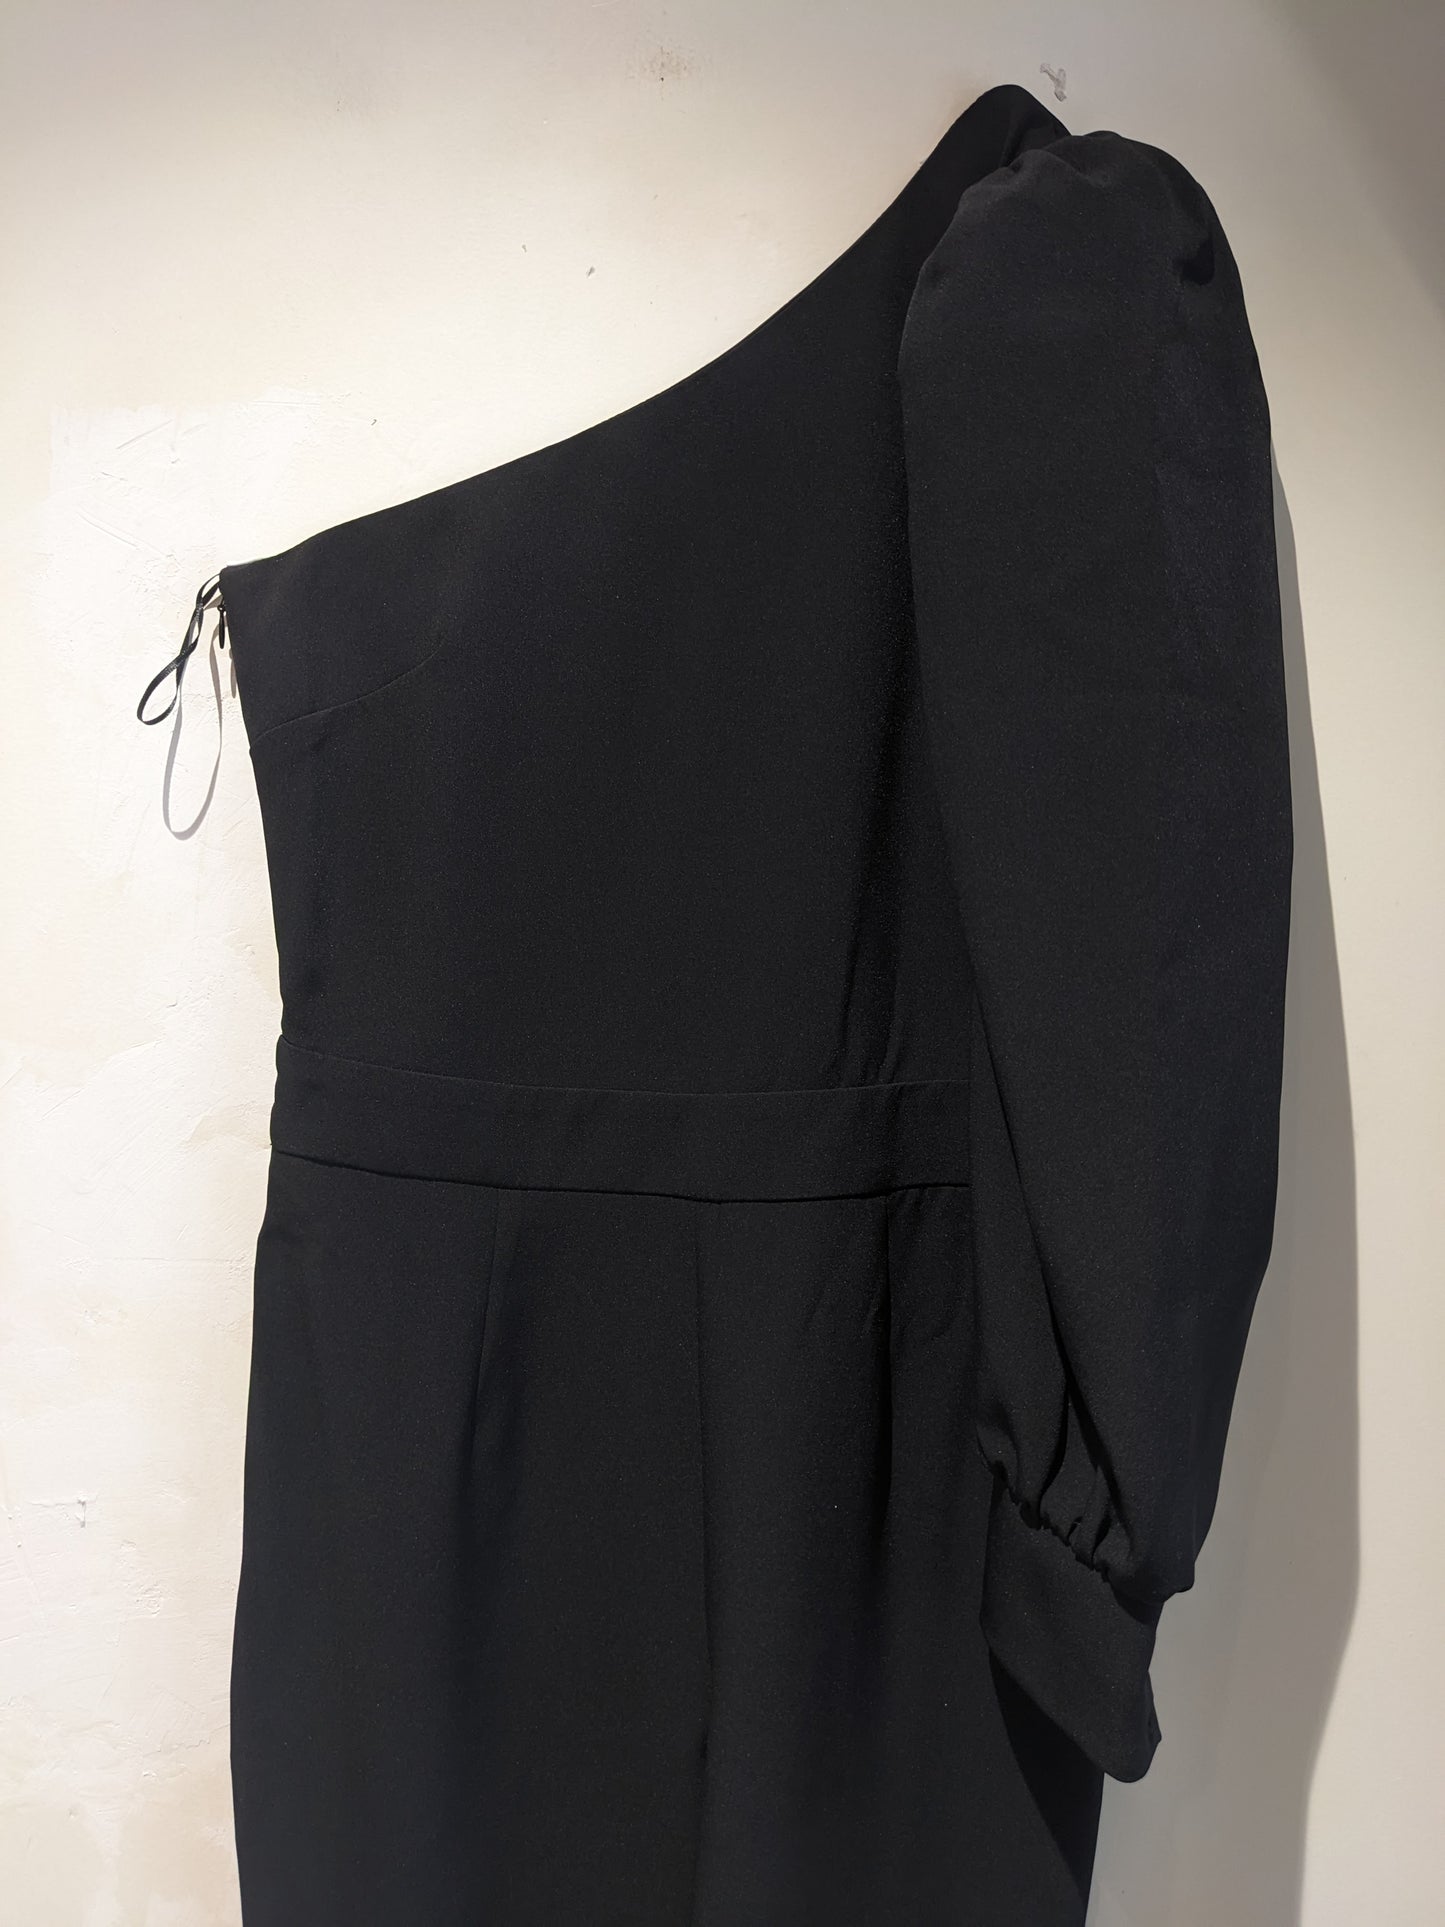 Zara Black One Shoulder Jumpsuit